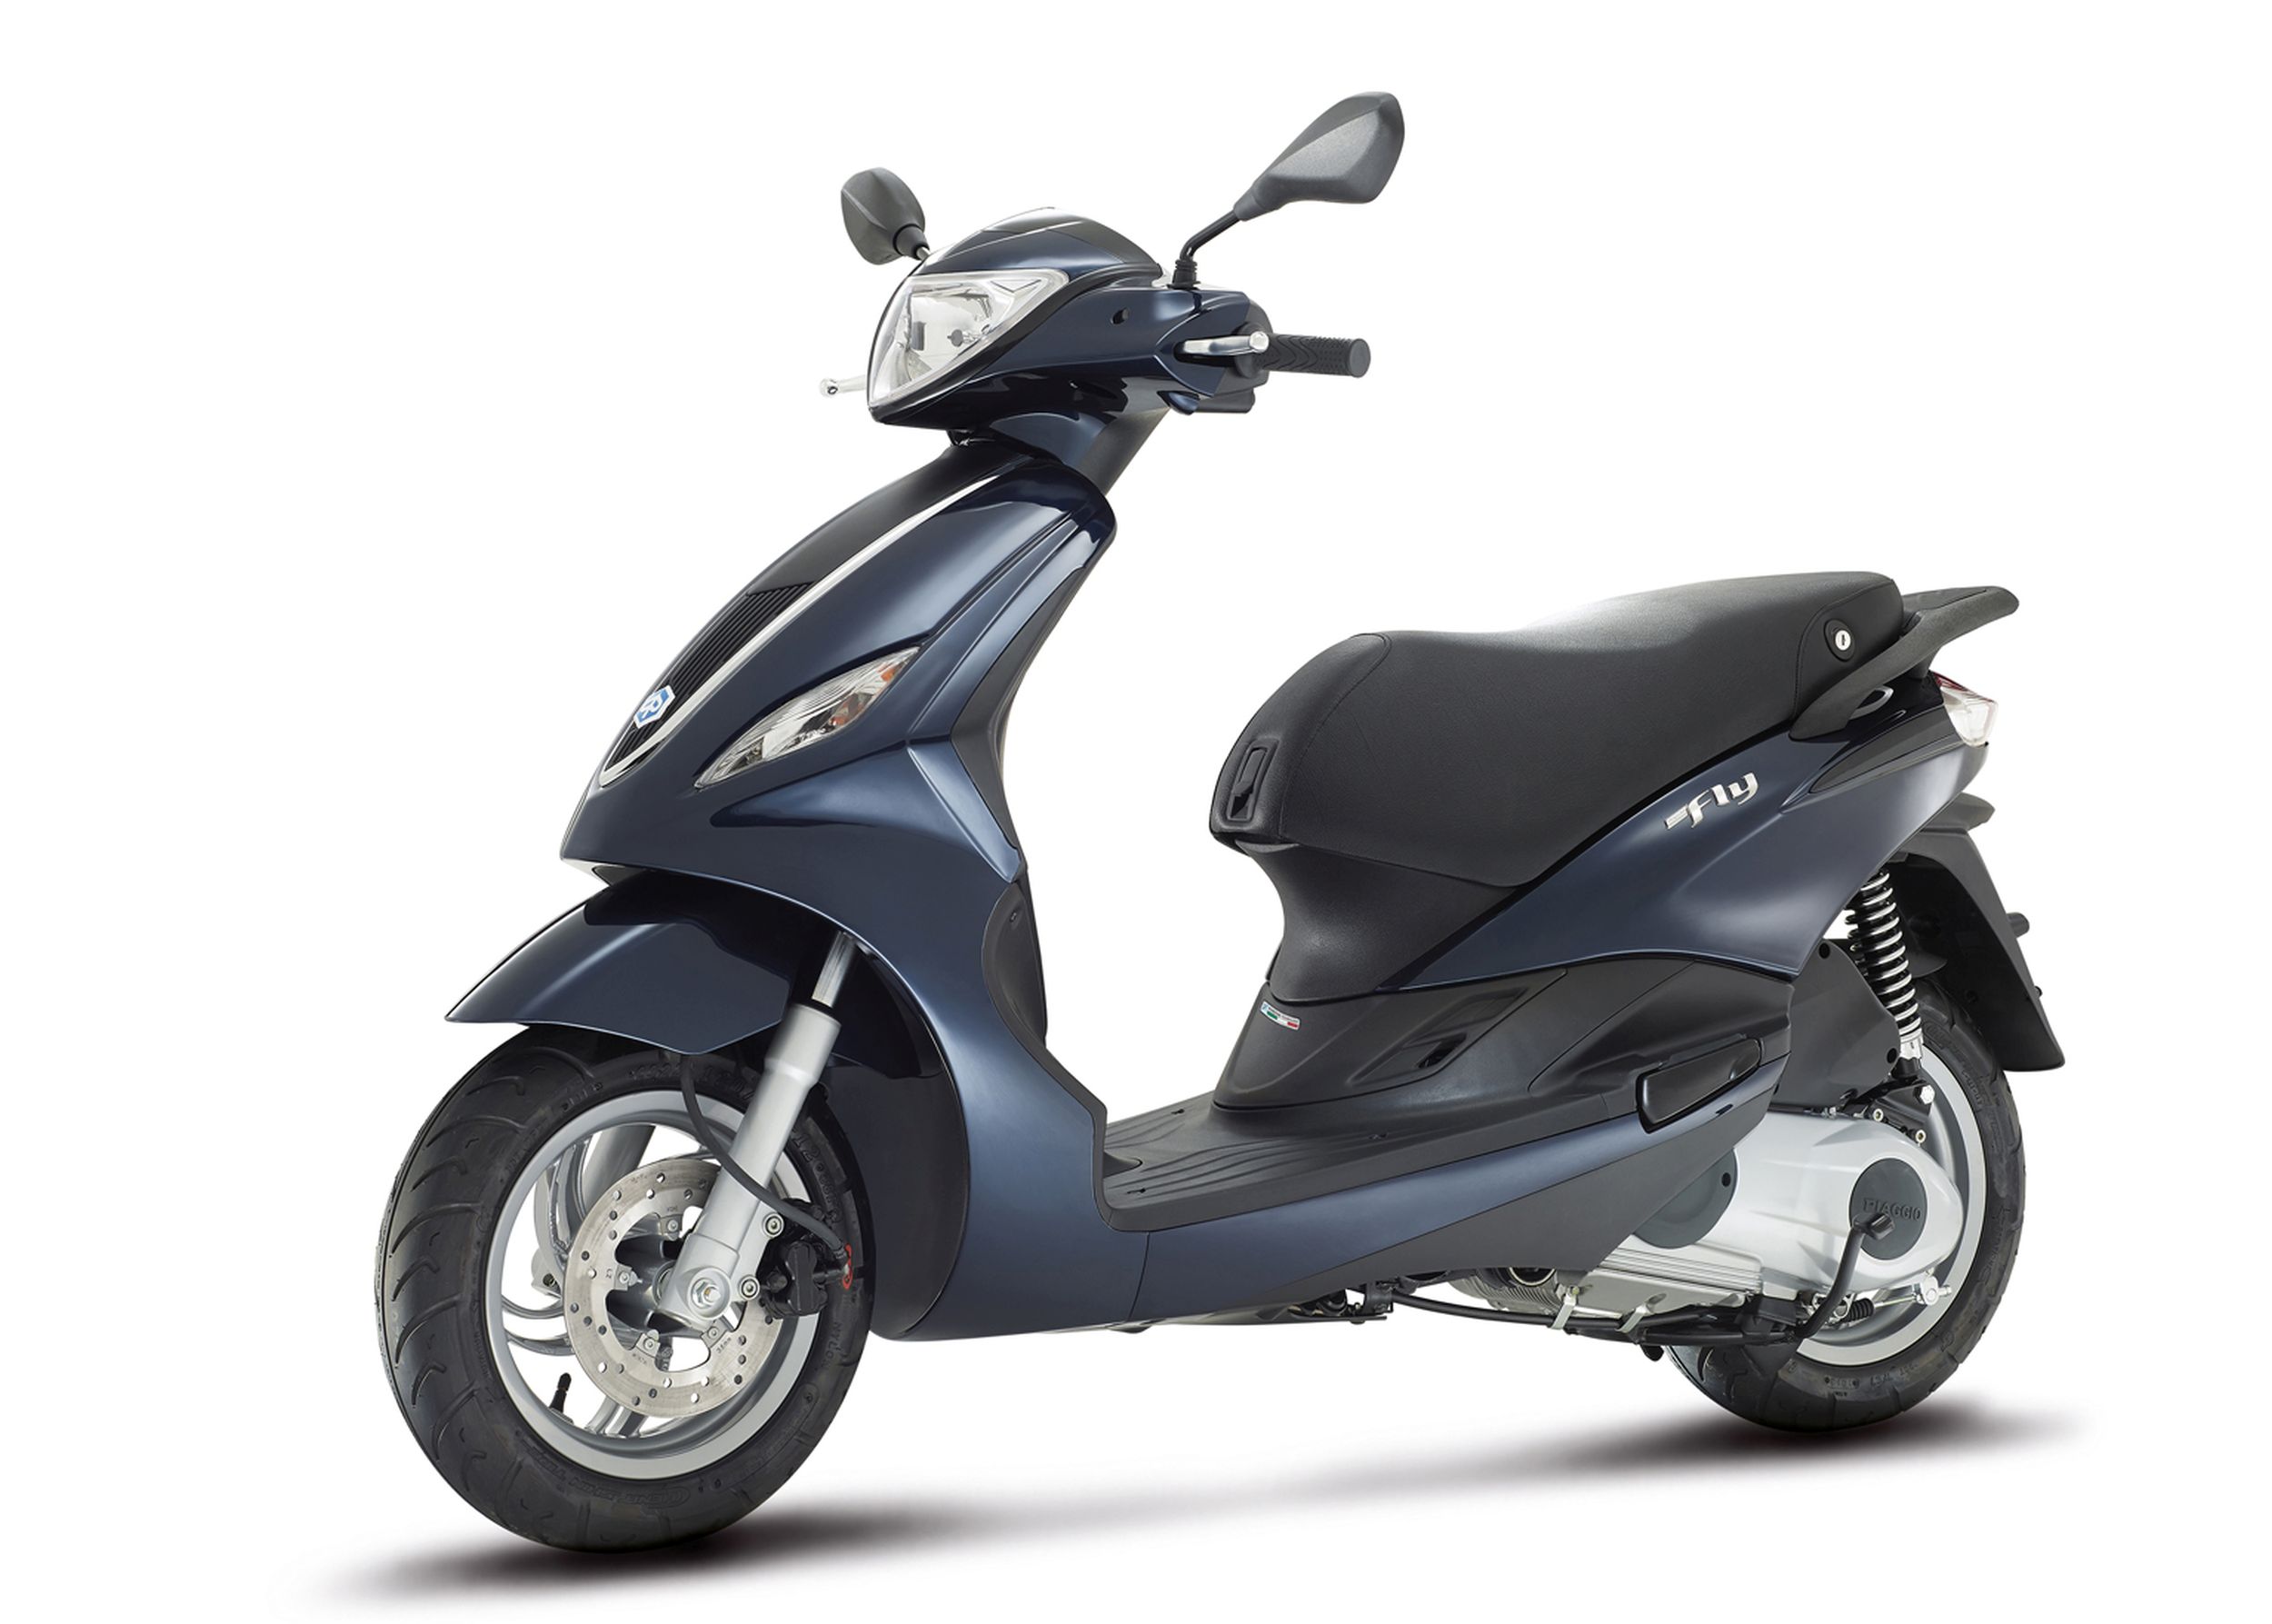 Gebrauchte und neue Piaggio Fly 50 2T Motorräder kaufen